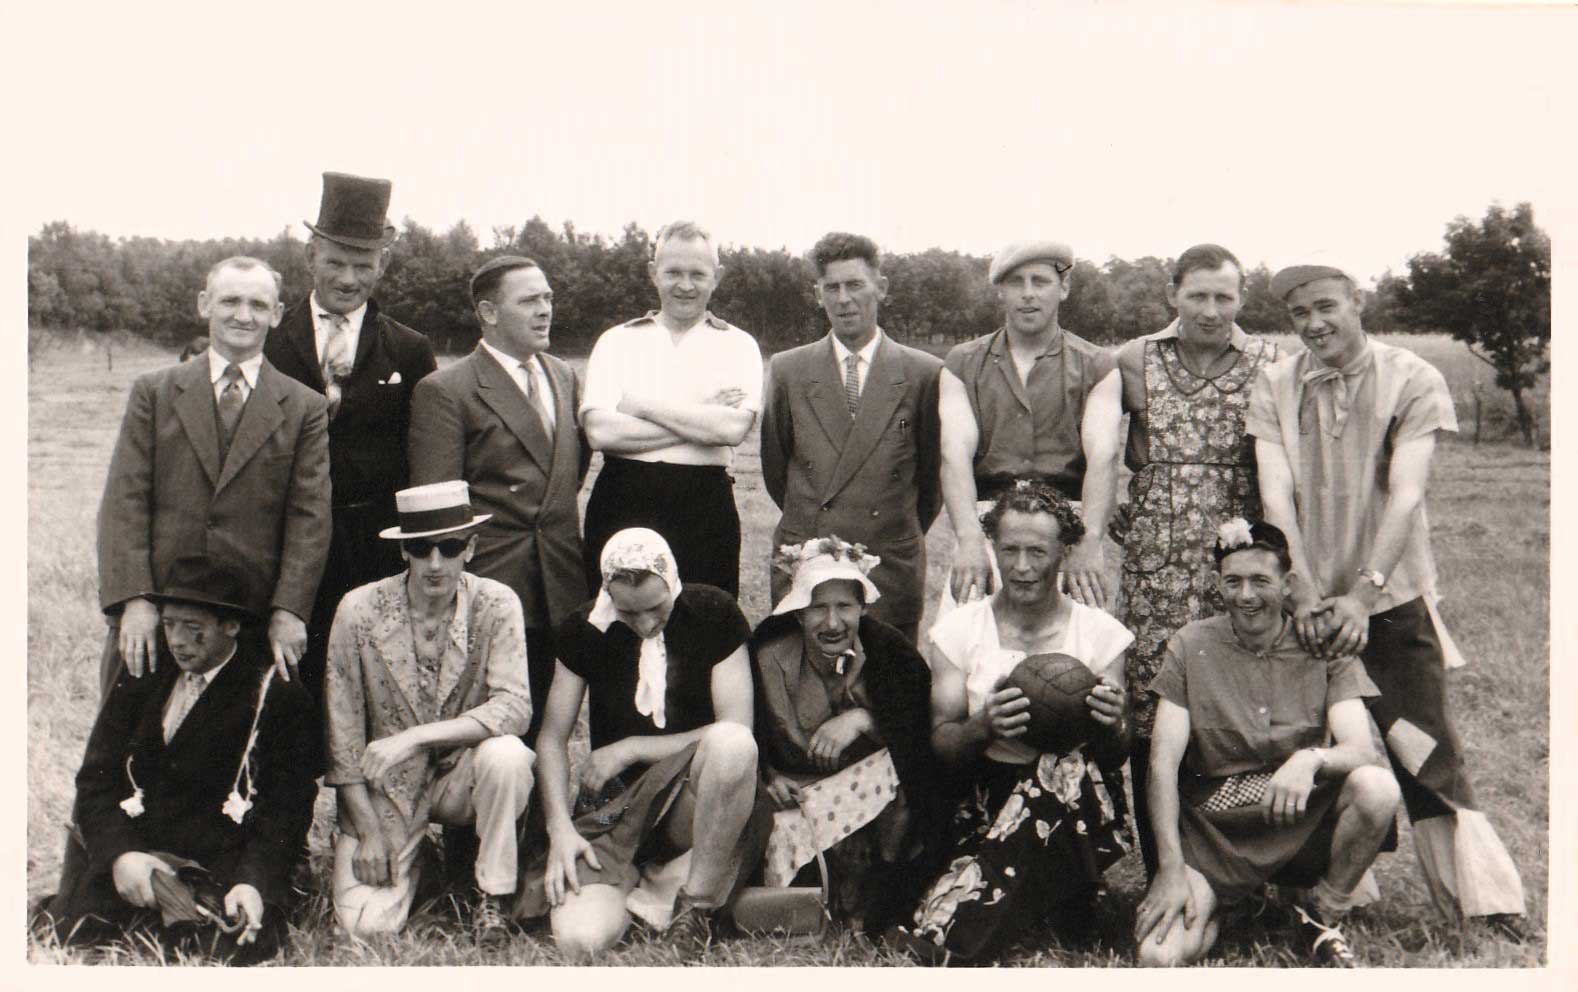 Boven van links naar rechts: Luisterburg, Piet Brand, Thijs Verboven, Kapelaan Oomen, De Waal (van de Duintjes), Piet Snepvangers, Frans Suijkerbuijk, Jan Hertogs.   Onder van links naar rechts: Riekes, De Waal (van de Heimolen), Somers, De Jong, Paul de Rooy, Schuurbiers (bron: 'Leny')